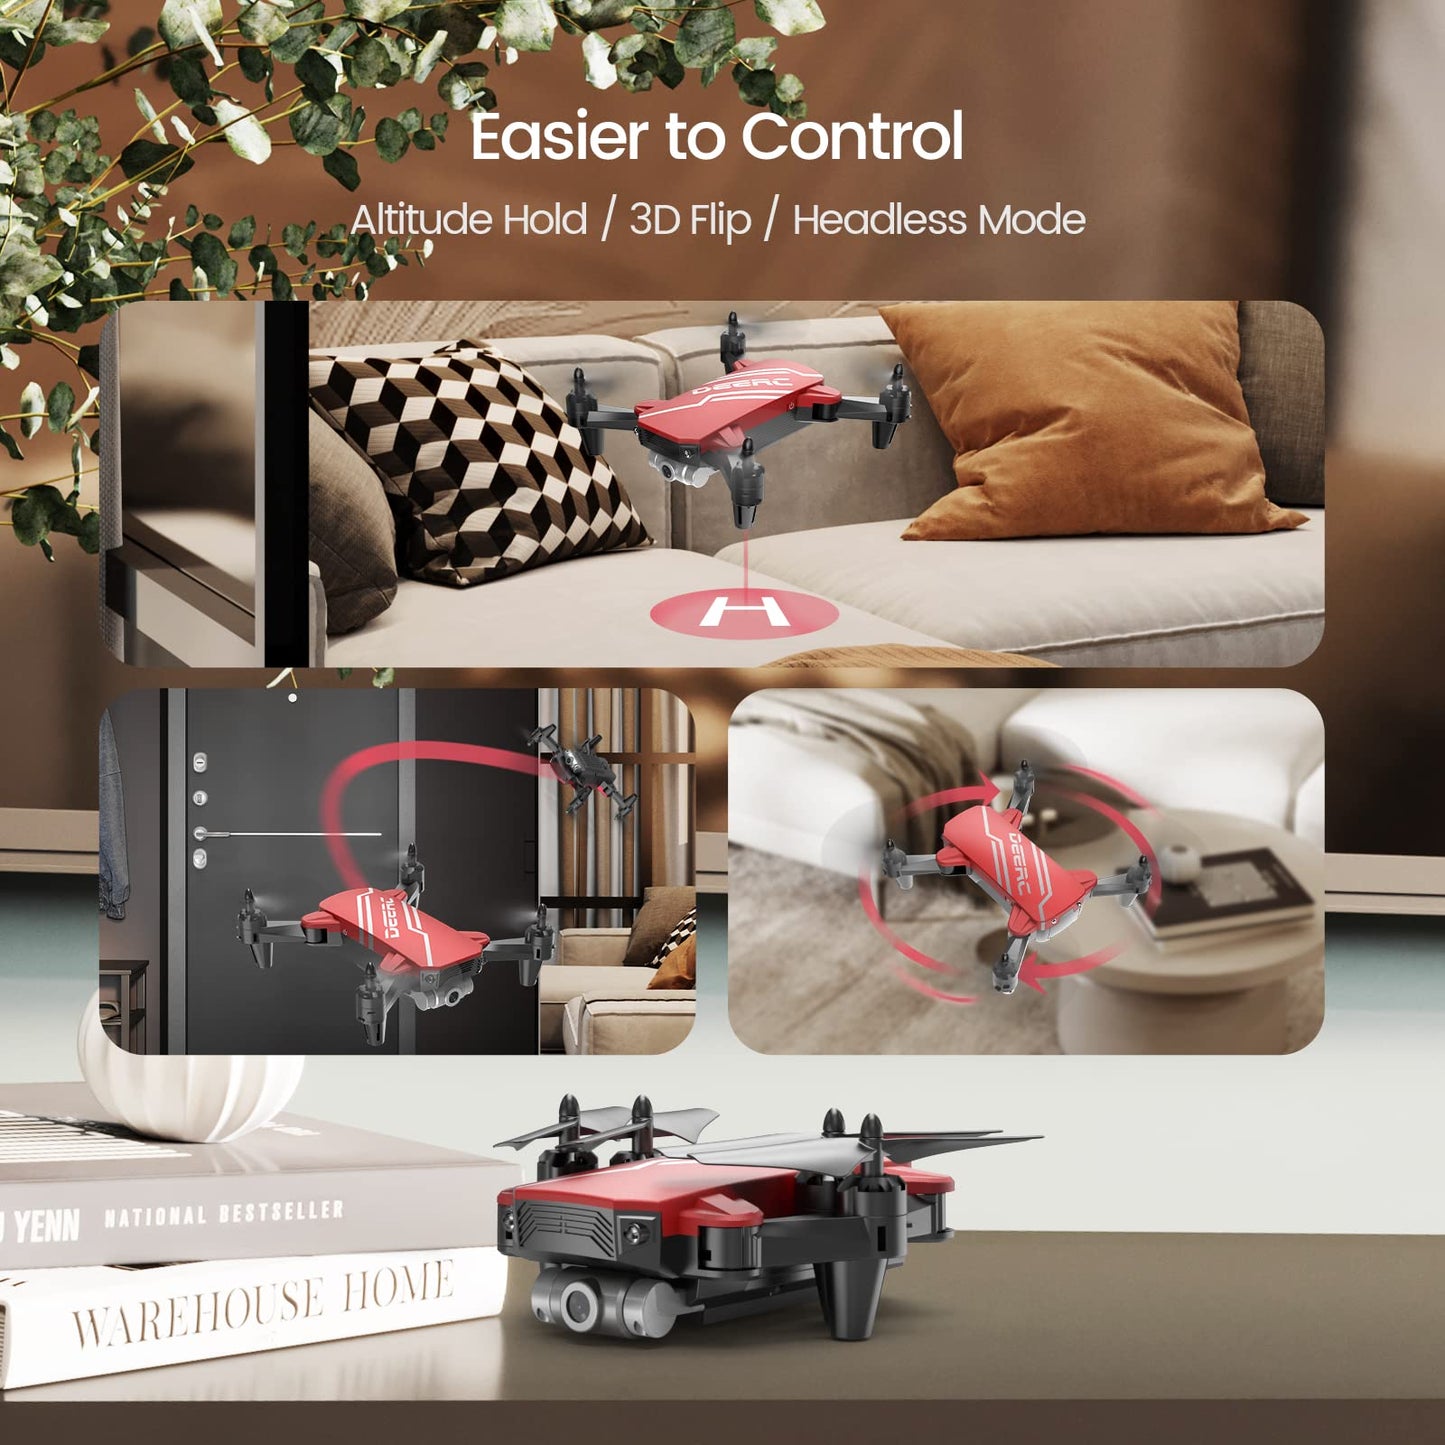 DEERC D20 Mini Drone con cámara para niños, juguetes de control remoto regalos para niños niñas con control de voz, selfie de gestos, retención de altitud, control de gravedad, inicio con una tecla, volteos 3D 2 baterías, 1 pieza, azul